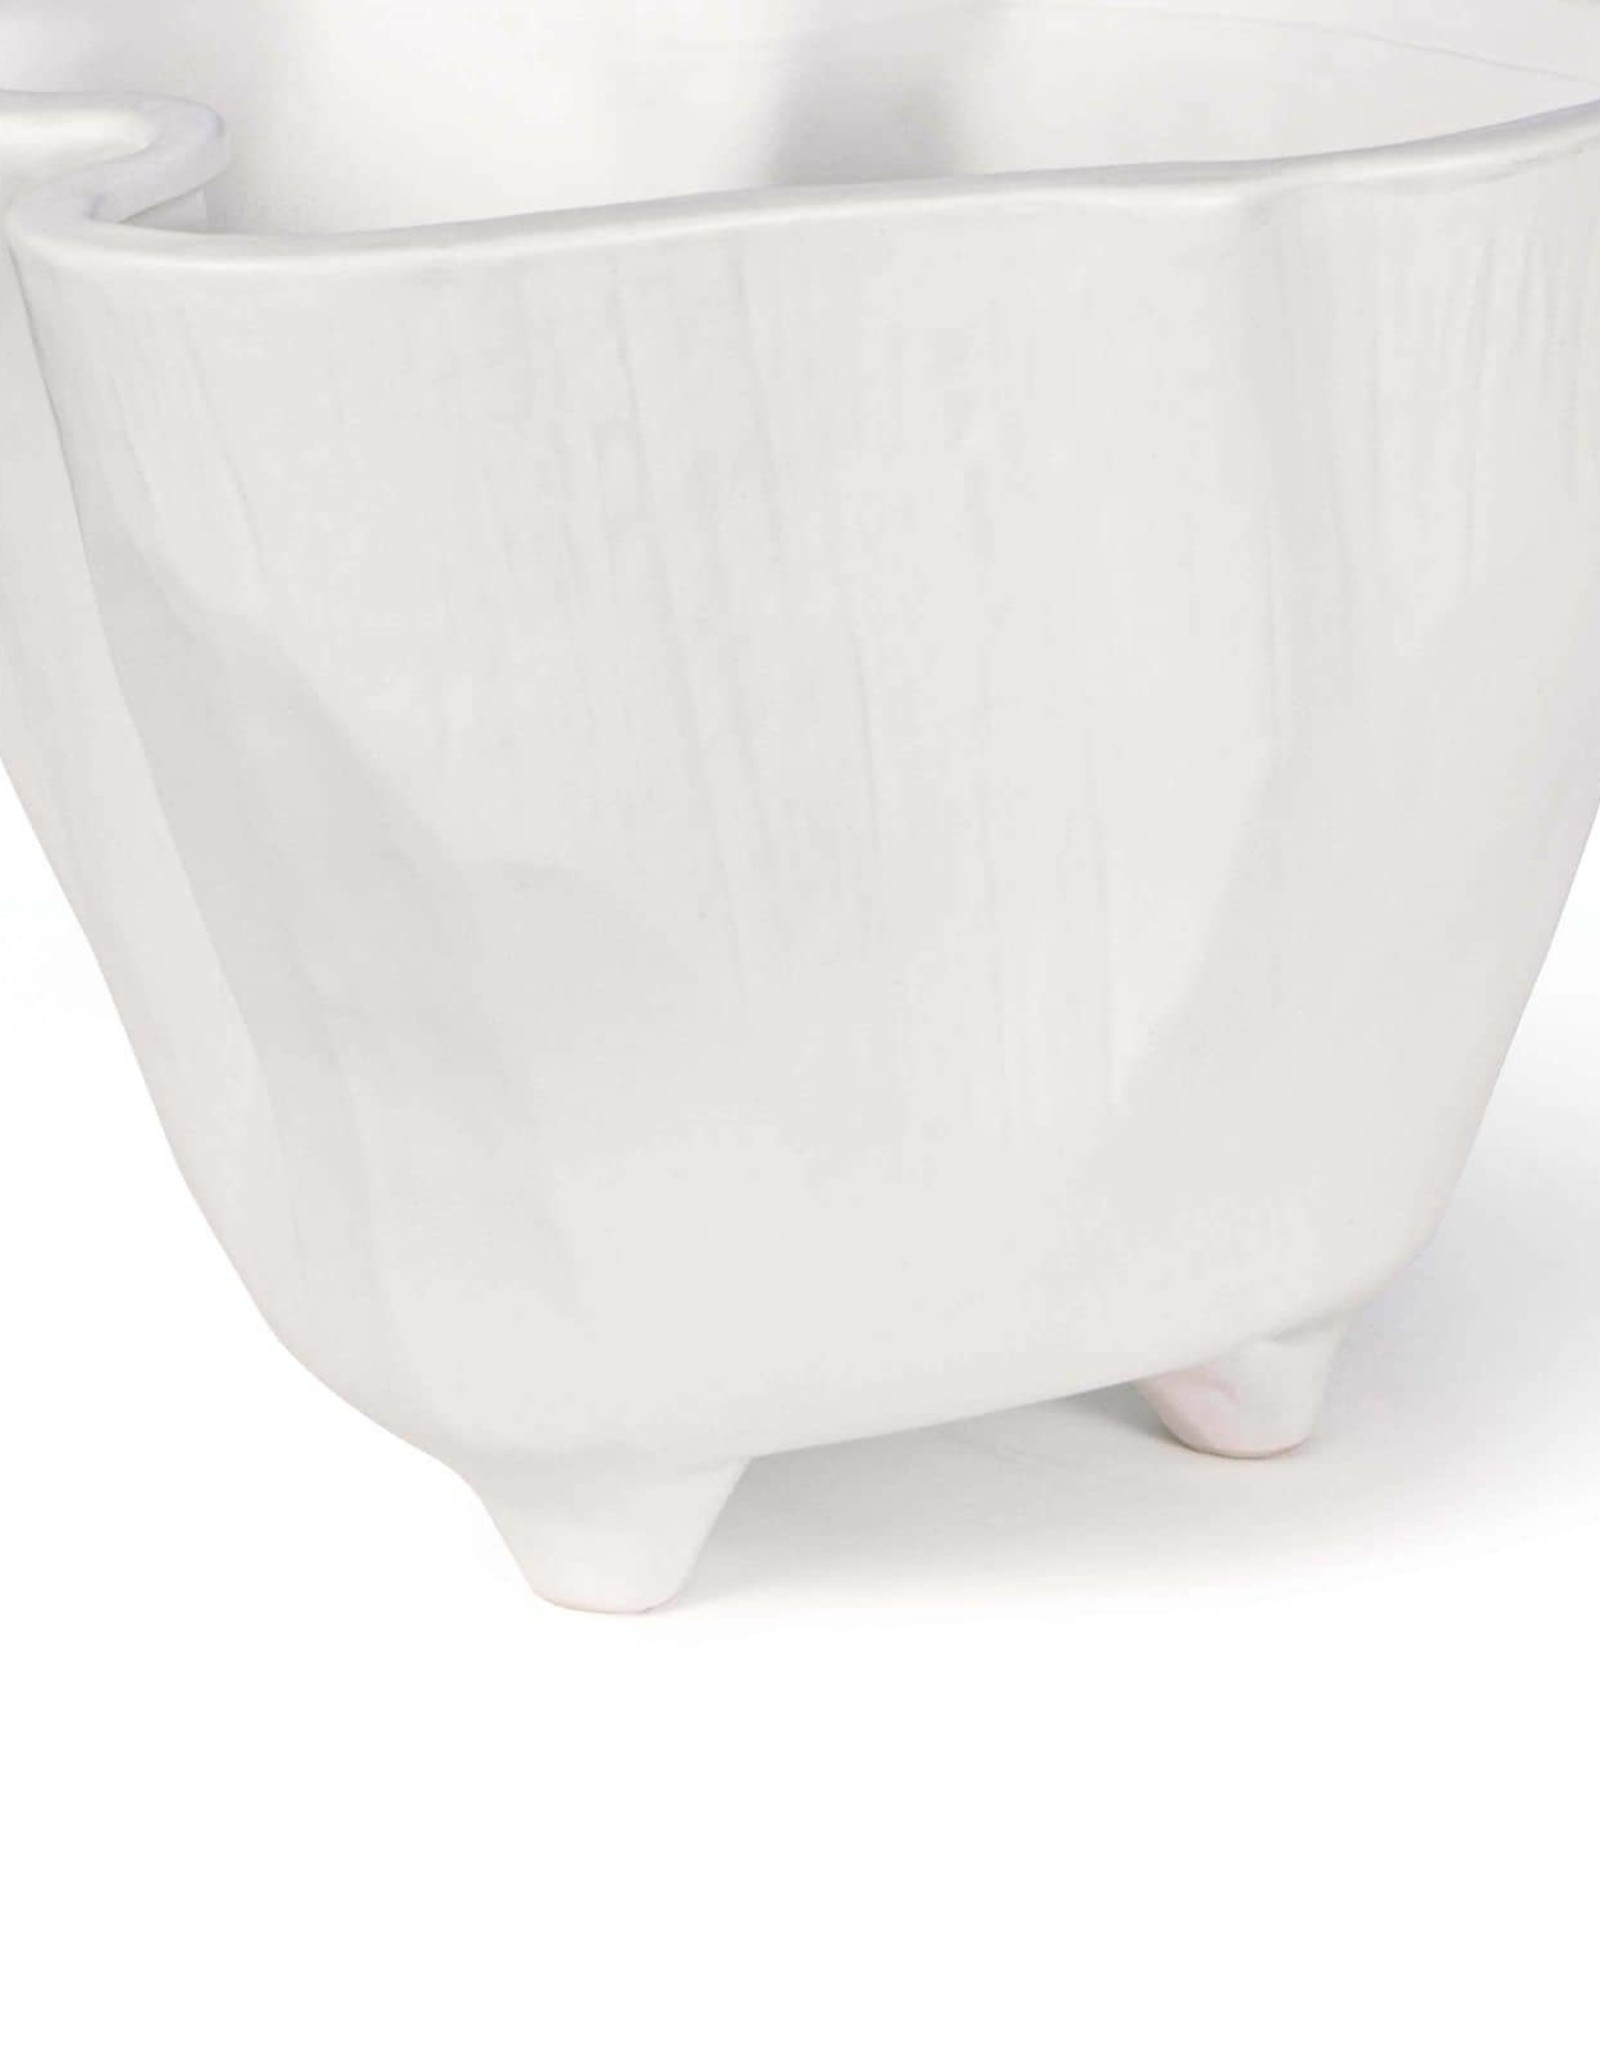 Regina Andrew Design Everest Ceramic Vase